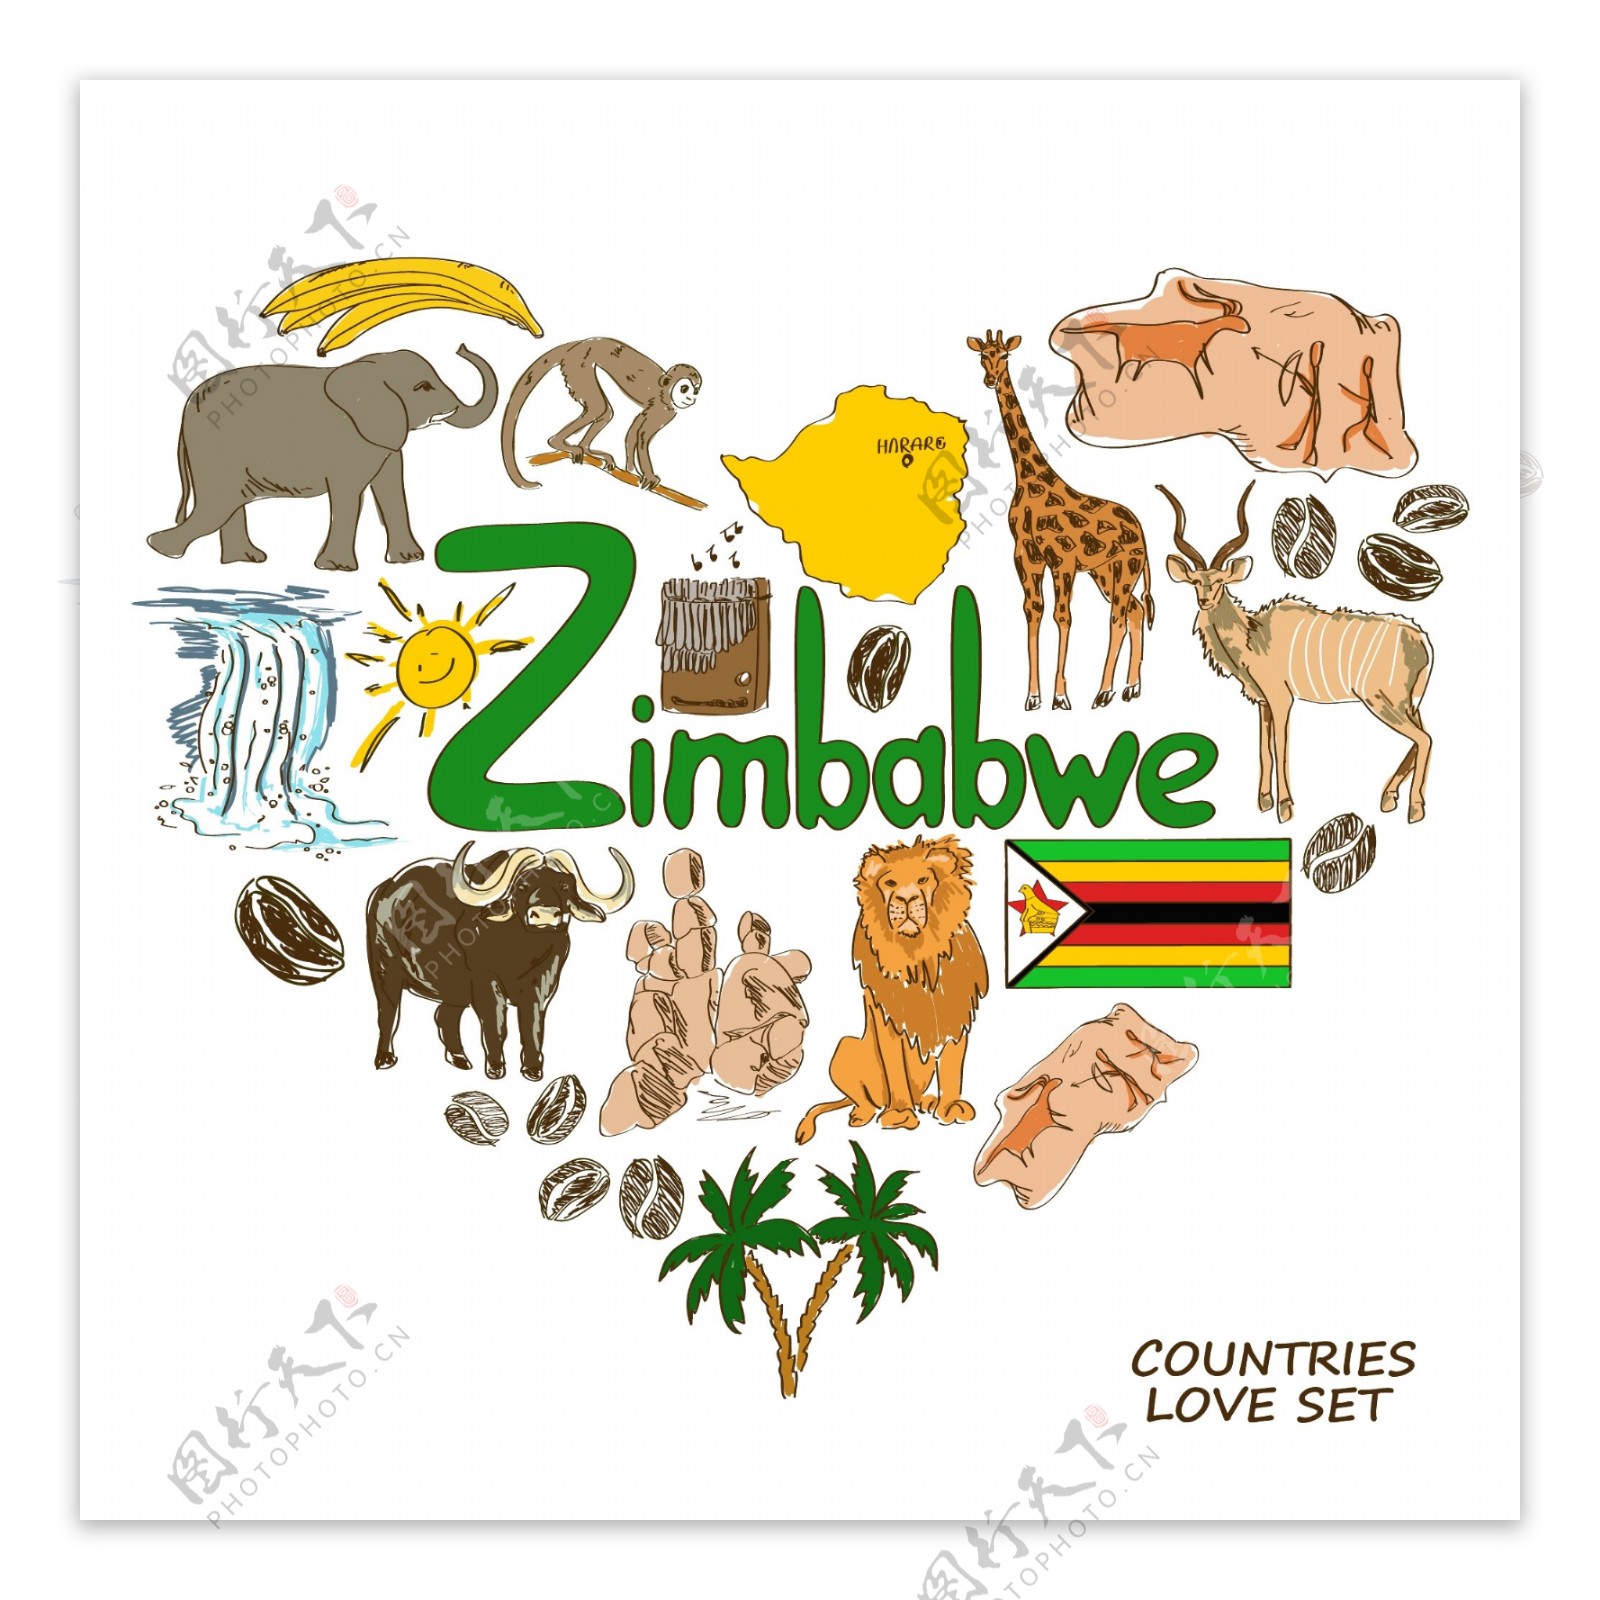 津巴布韦国家元素